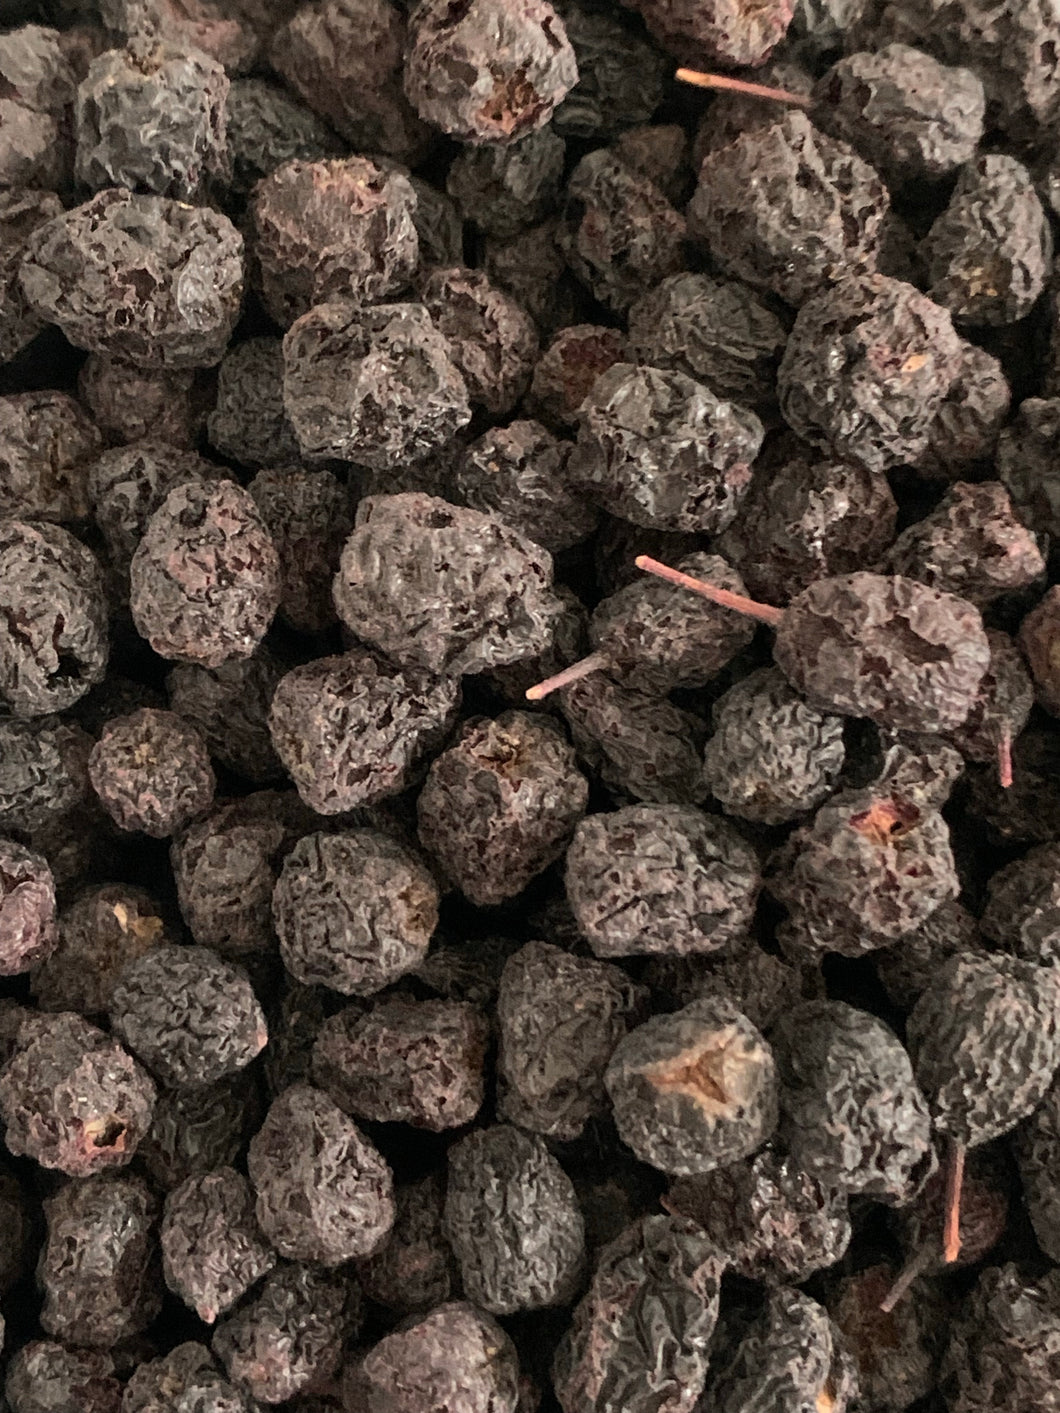 Aronia “Choke” Berries (Dried)